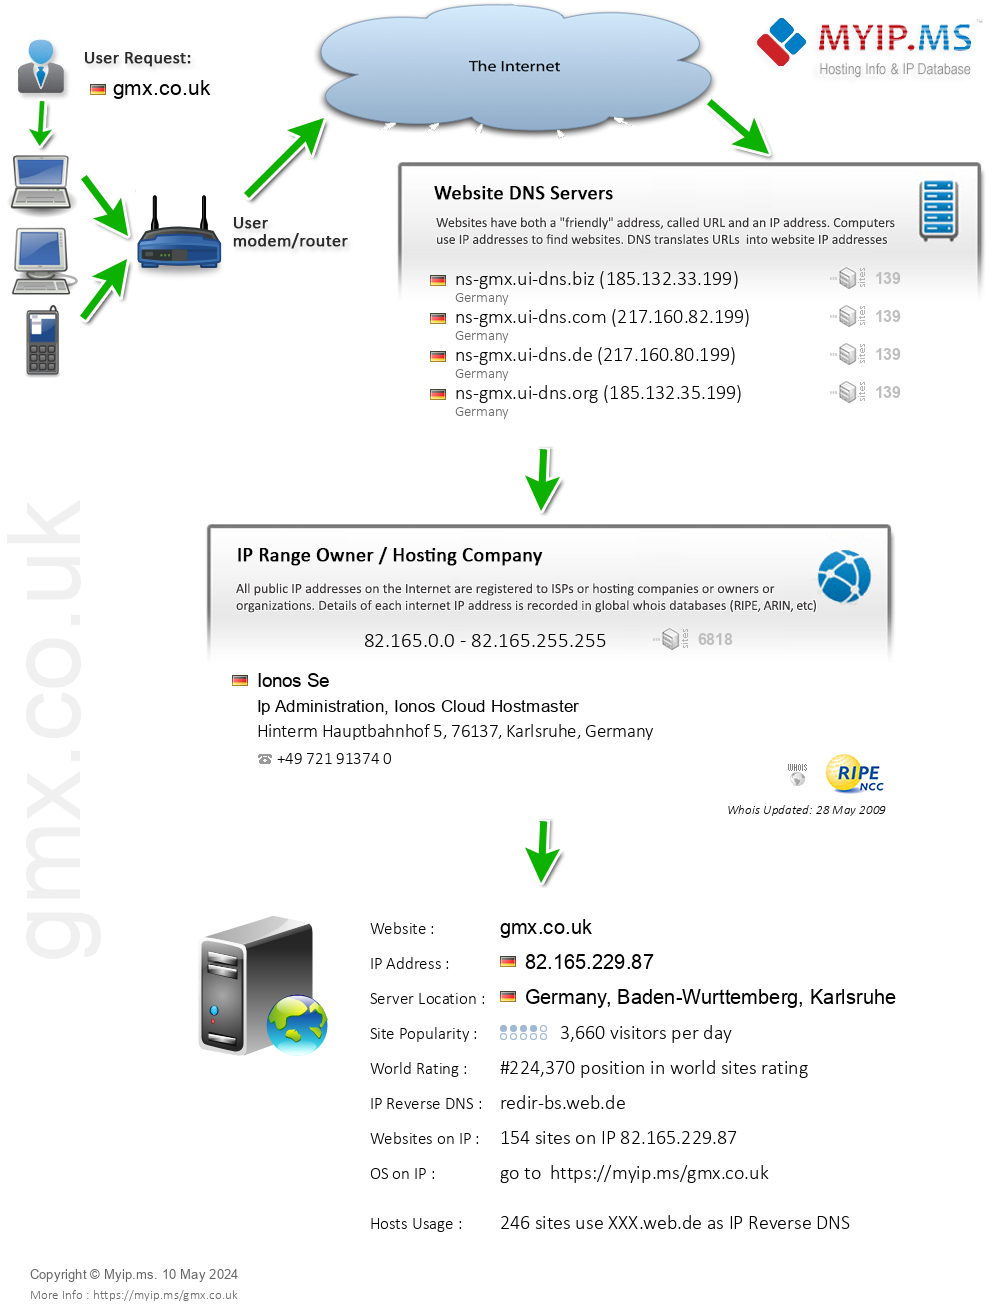 Gmx.co.uk - Website Hosting Visual IP Diagram